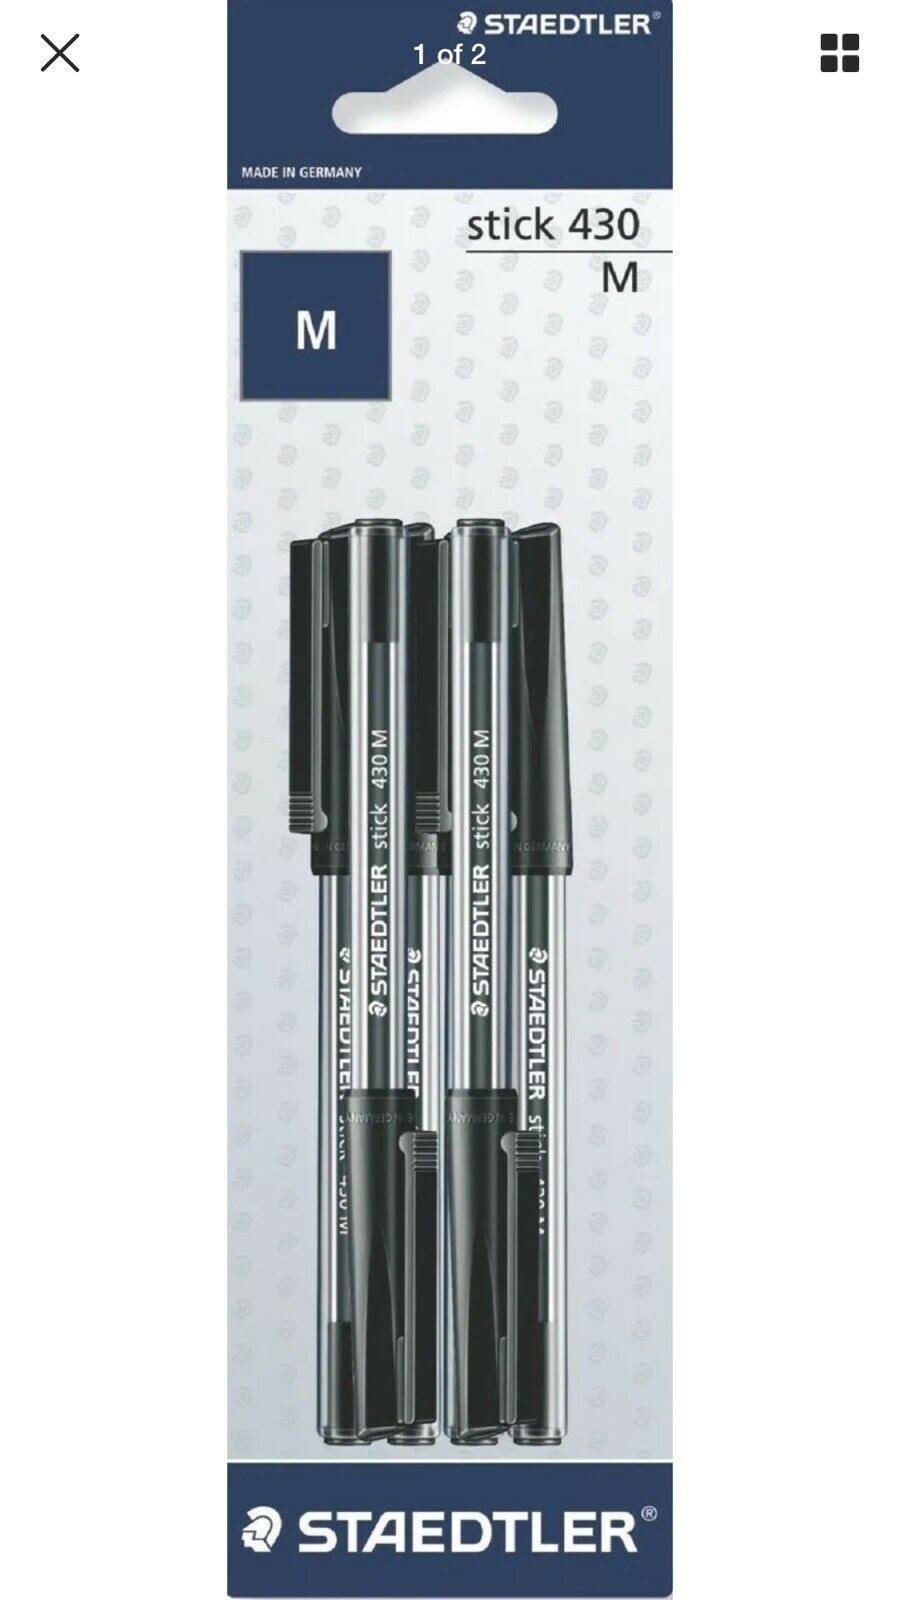 Staedtler Ballpoint Pens - 6 pack, Black, Medium